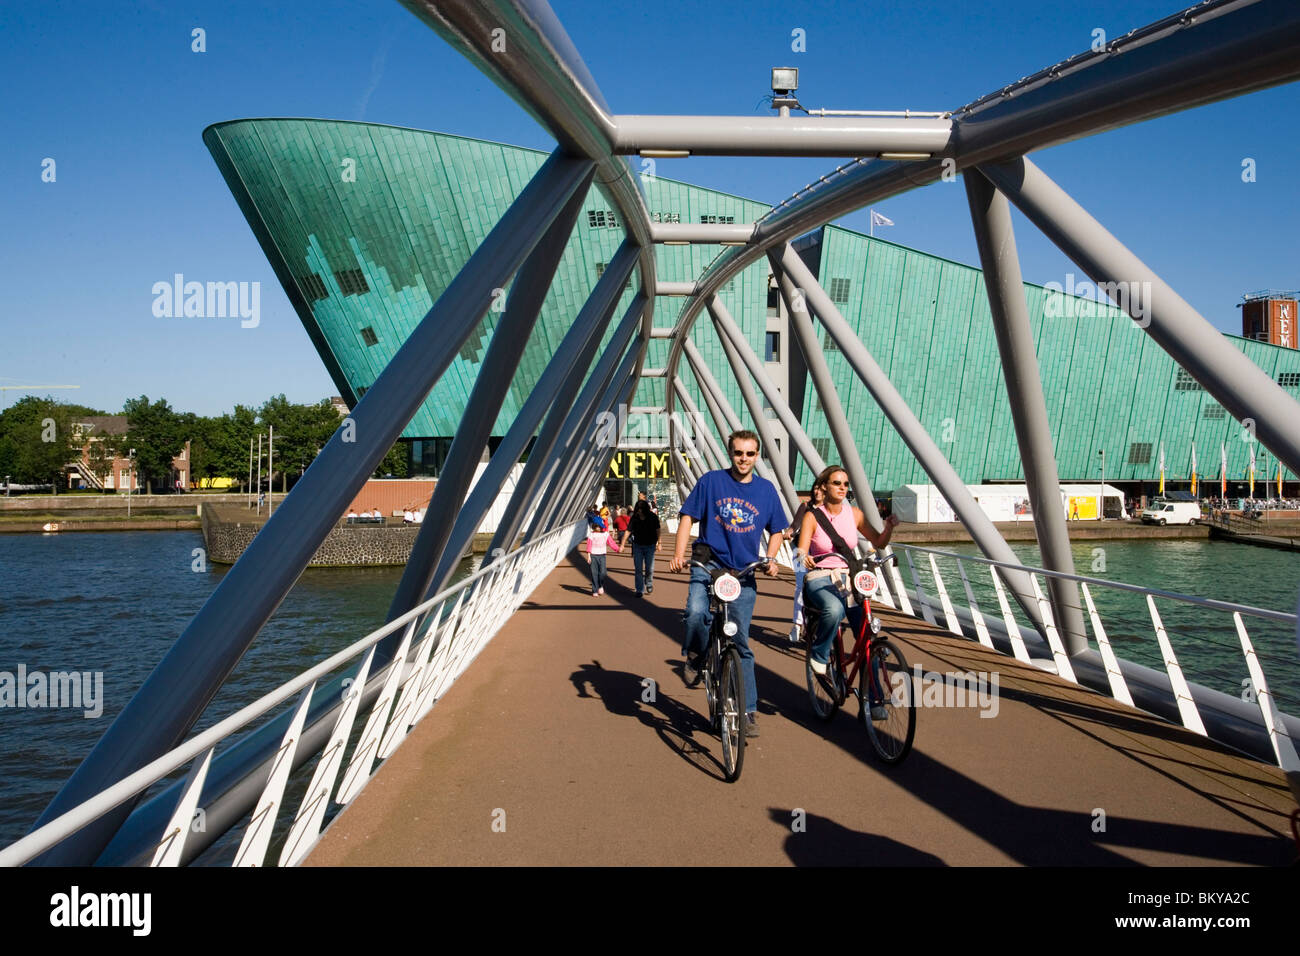 NEMO Museum, pont, les cyclistes, les cyclistes sur le pont, laissant NEMO Museum, Amsterdam, Hollande, Pays-Bas Banque D'Images